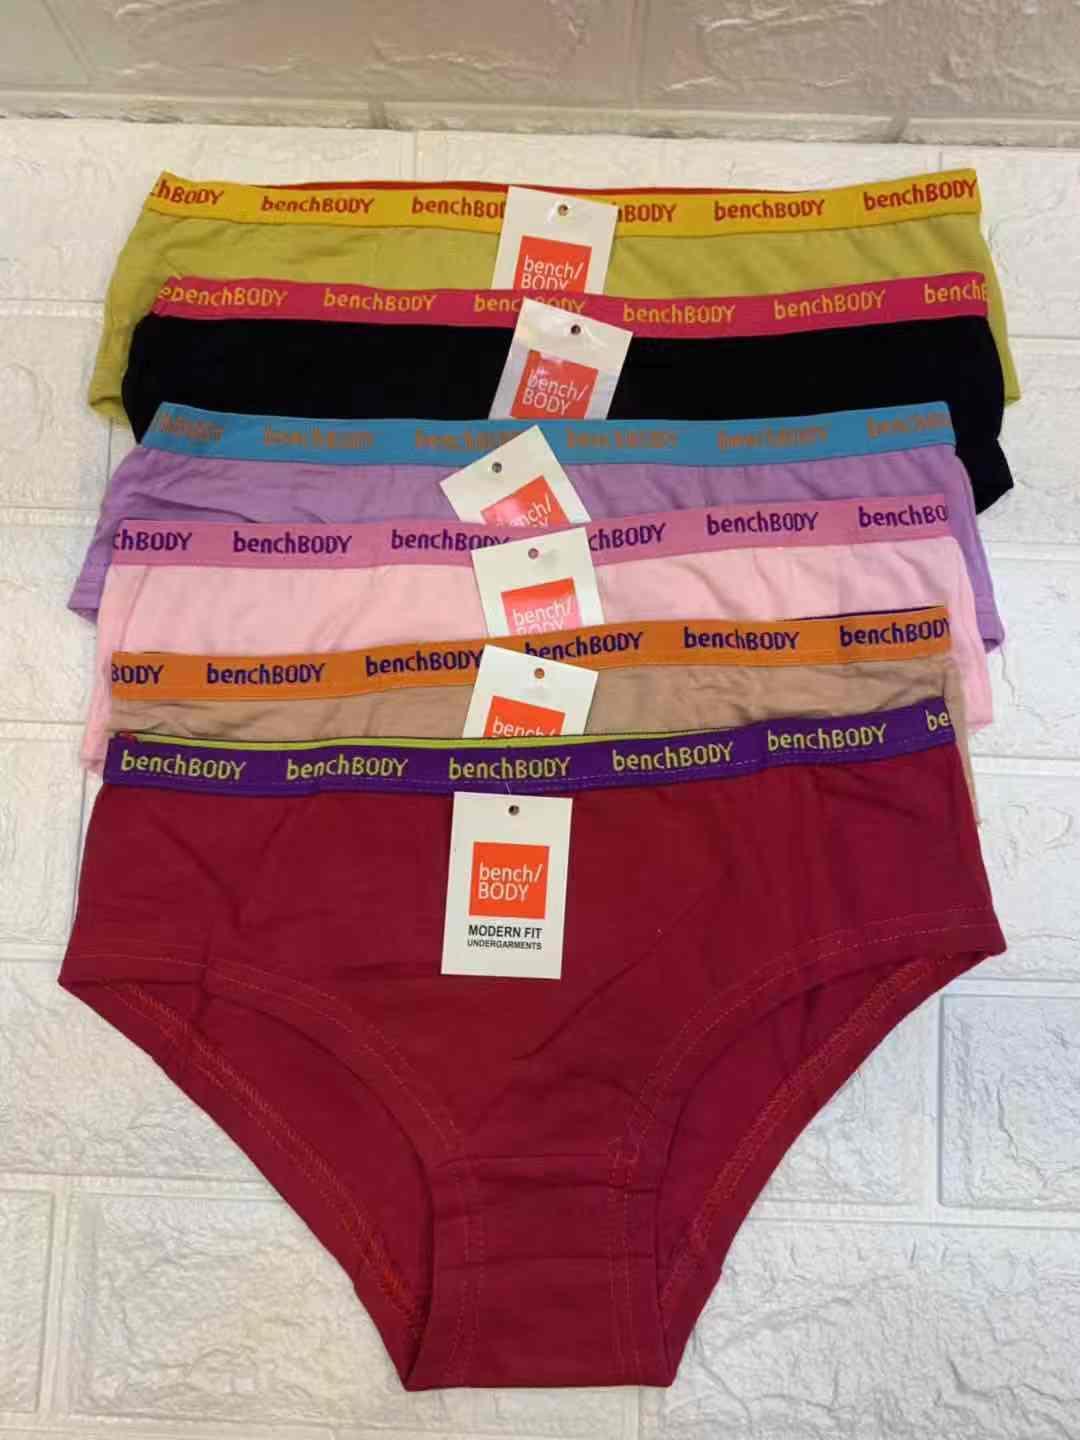 6Pcs Disposable Underwear Panty Unisex Non-Woven Briefs Handy